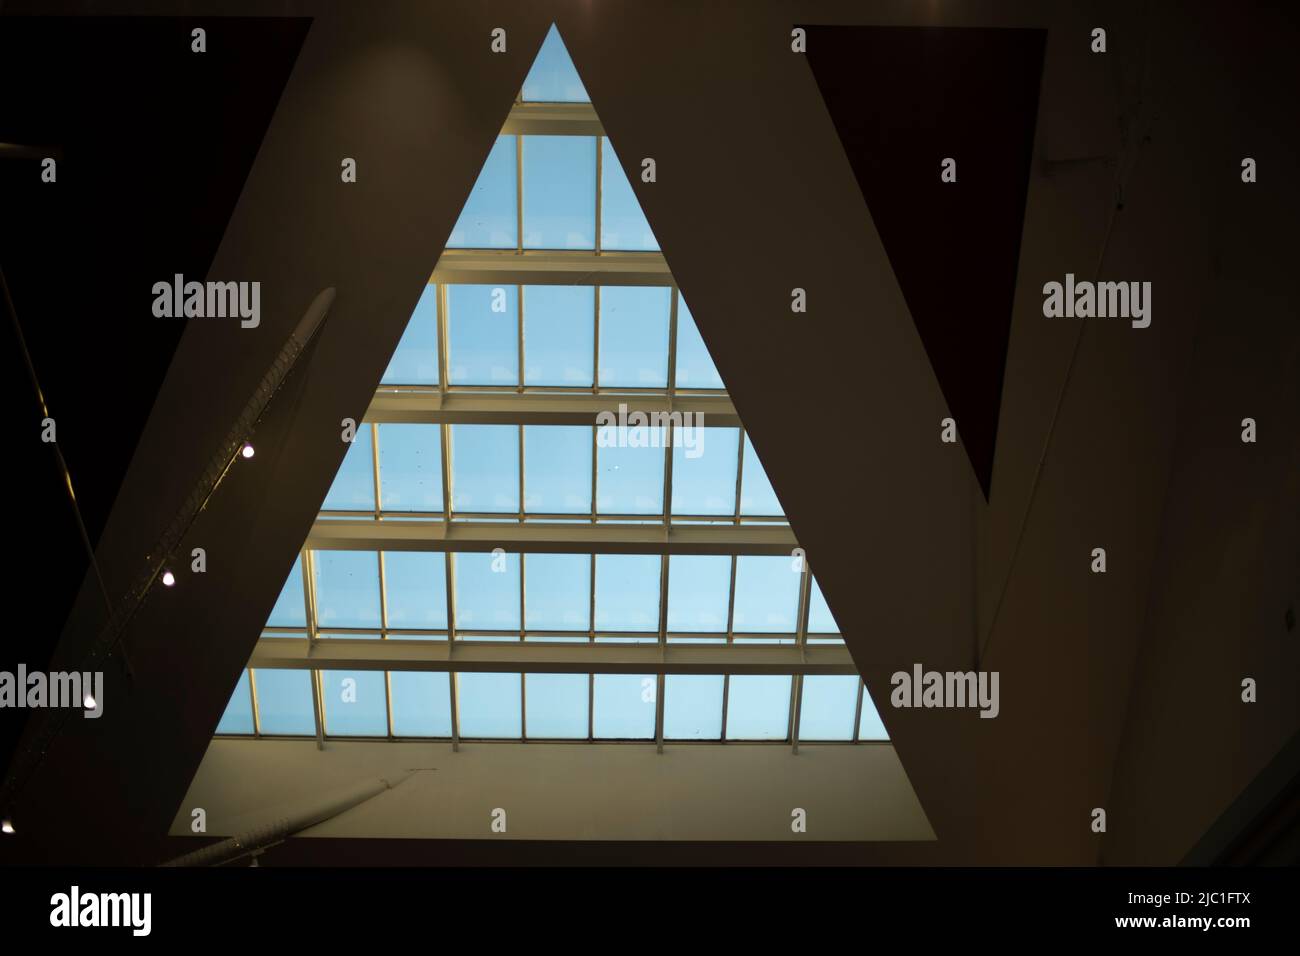 Dreieckige Fenster im Gebäude. Architekturdetails. Glas im Dach.  Ursprüngliche Form der Lichtöffnung in der Wand Stockfotografie - Alamy